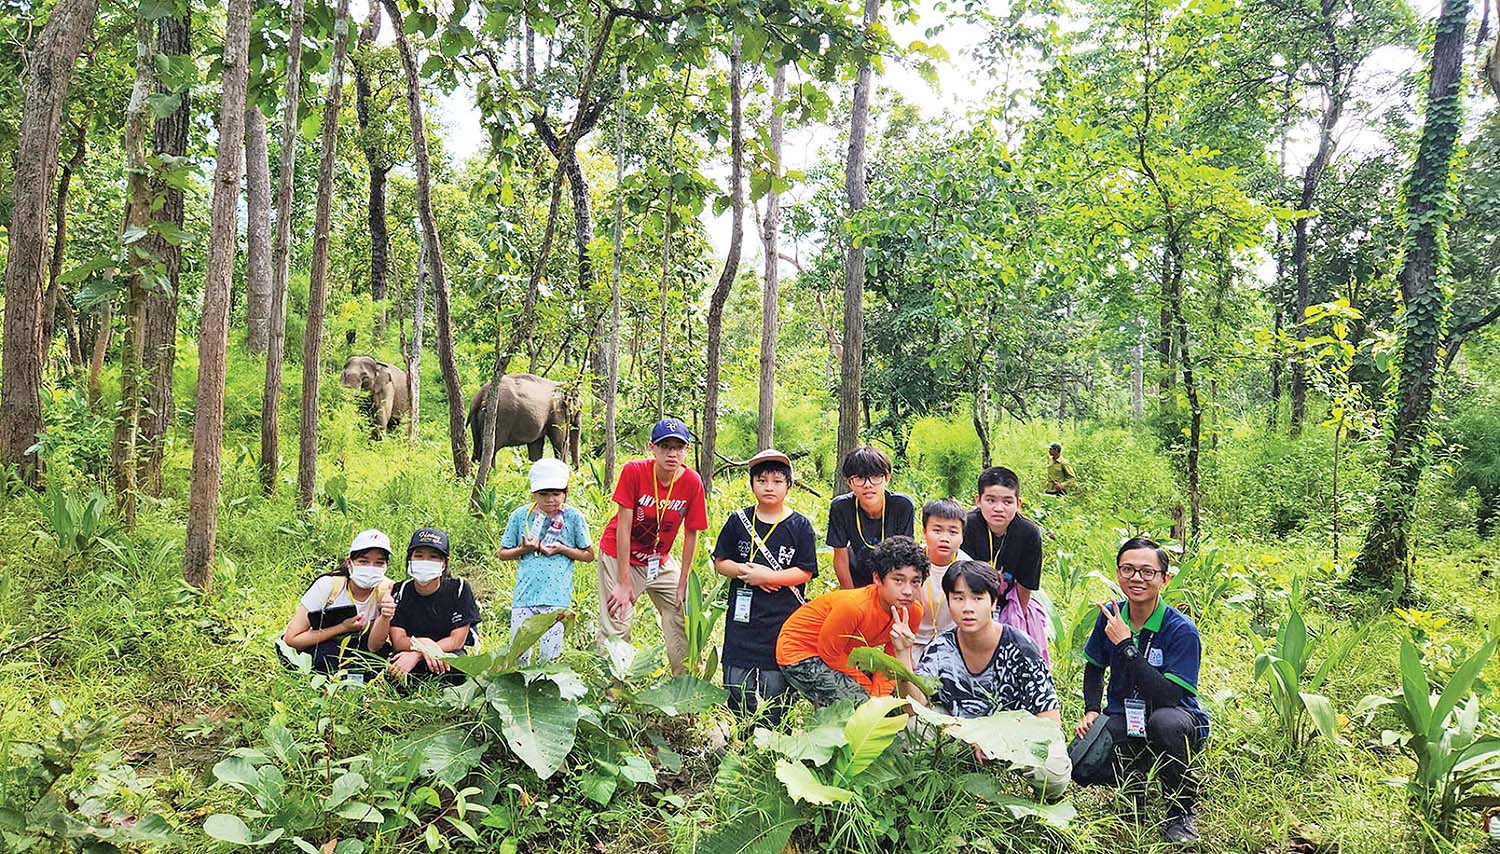 Du lịch sinh thái rừng thu hút nhiều lứa tuổi	ảnh: nature expedition